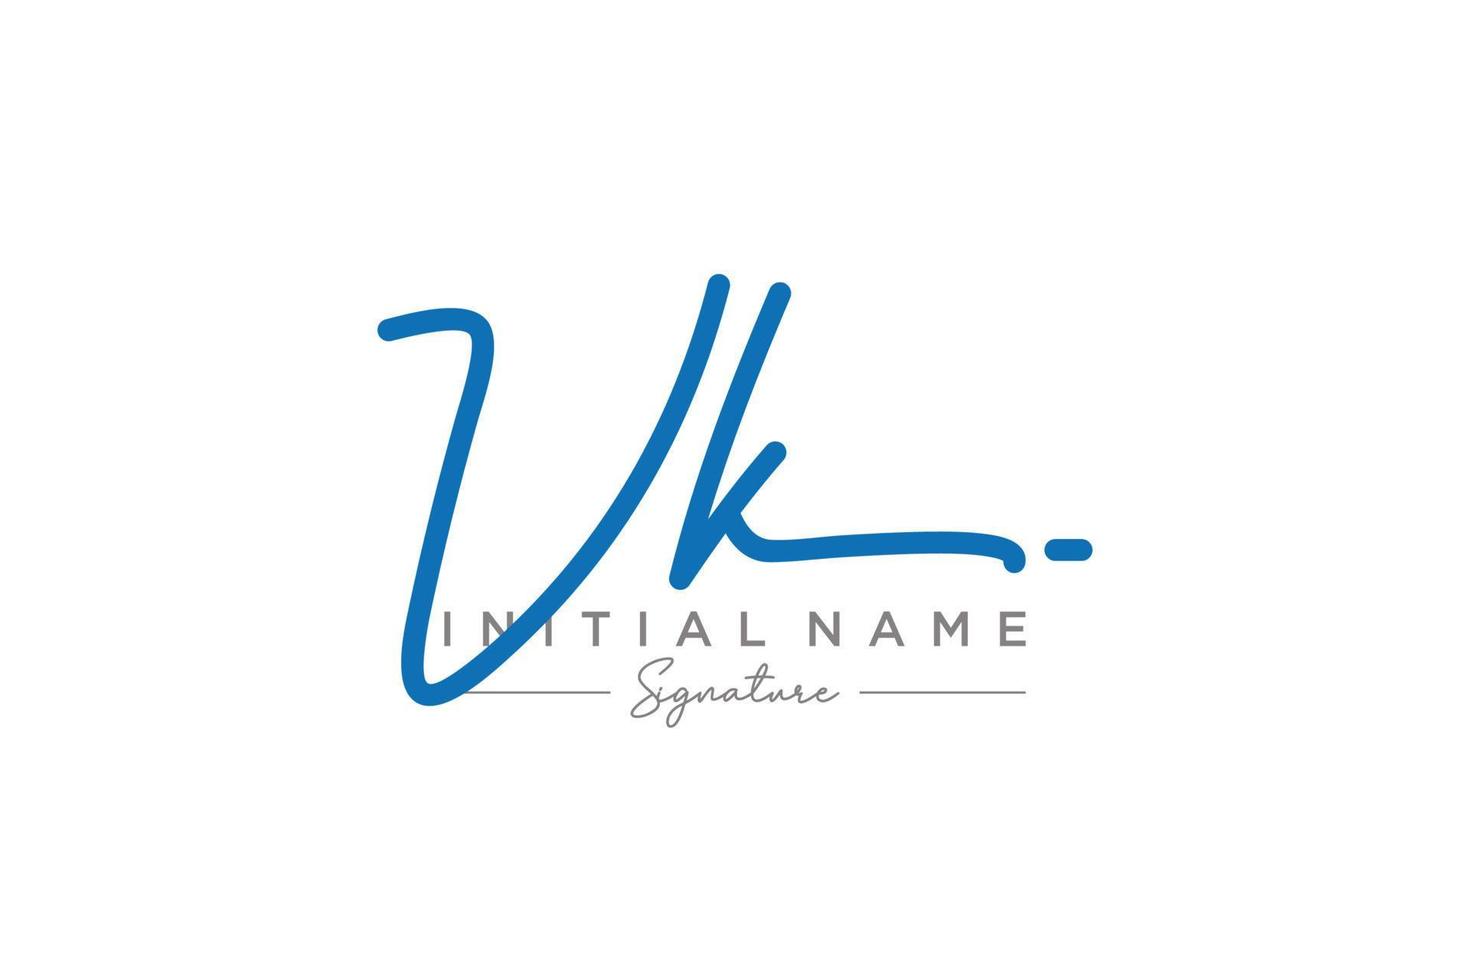 iniziale vk firma logo modello vettore. mano disegnato calligrafia lettering vettore illustrazione.